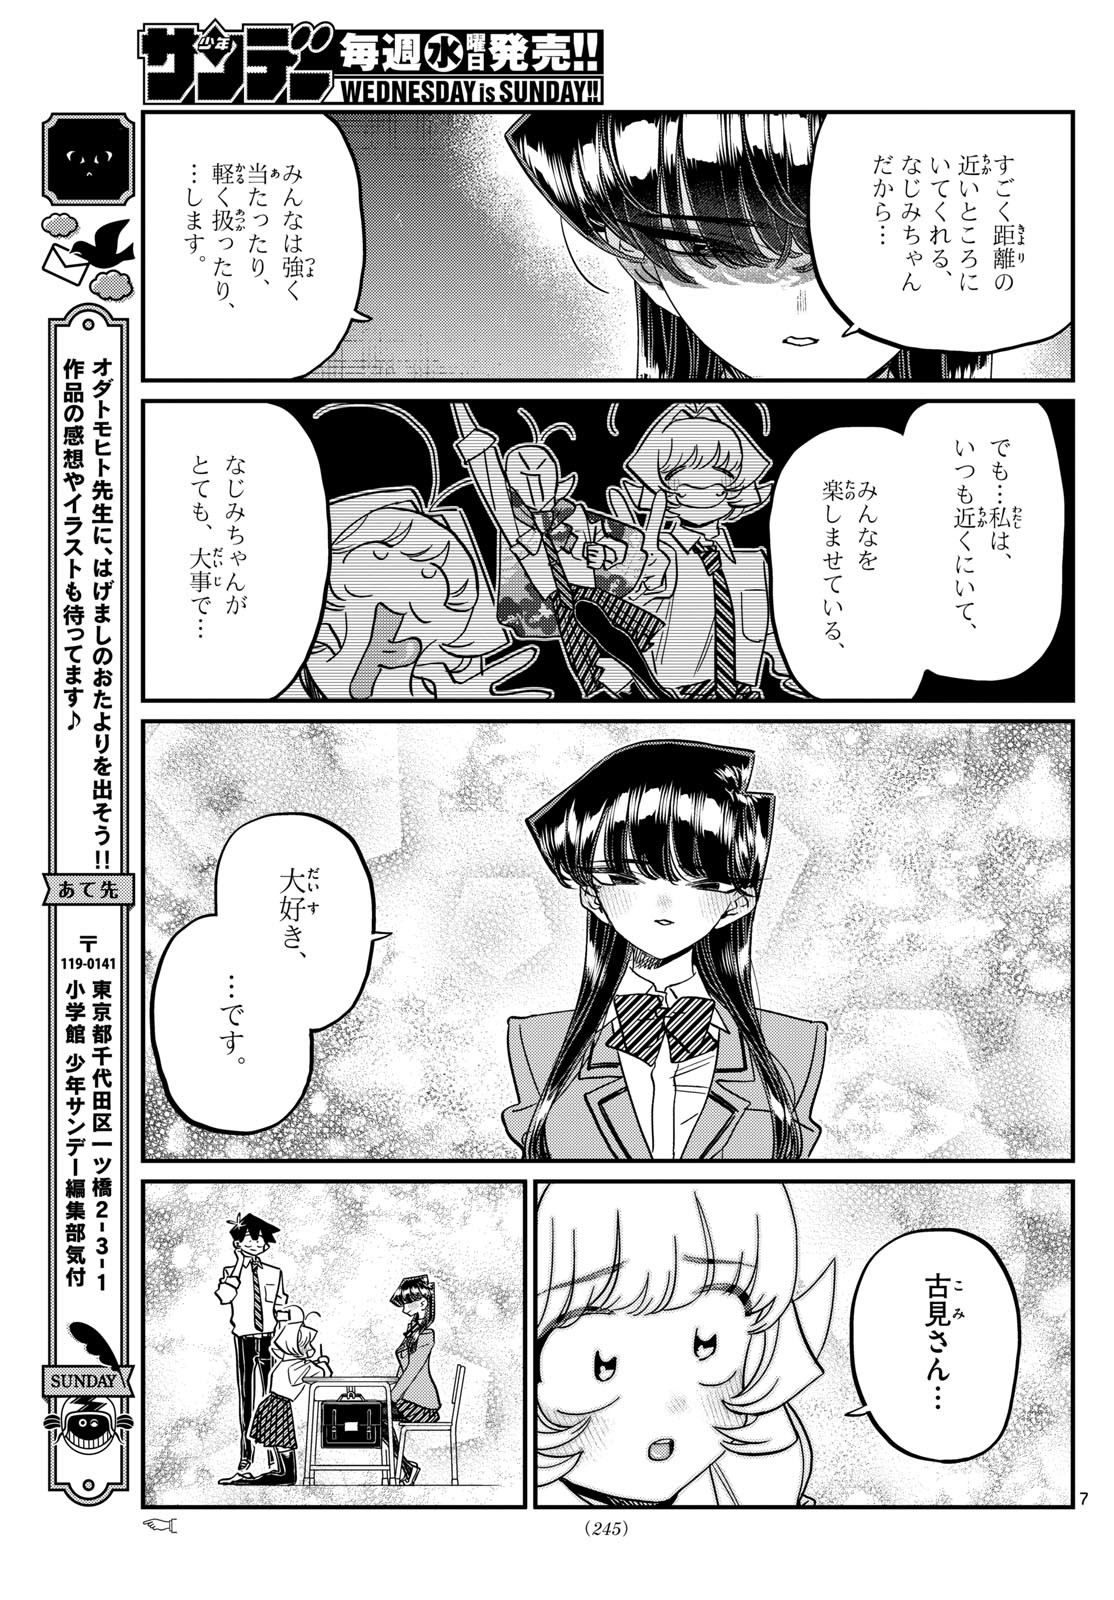 Komi-san wa Komyushou Desu - Chapter 466 - Page 2